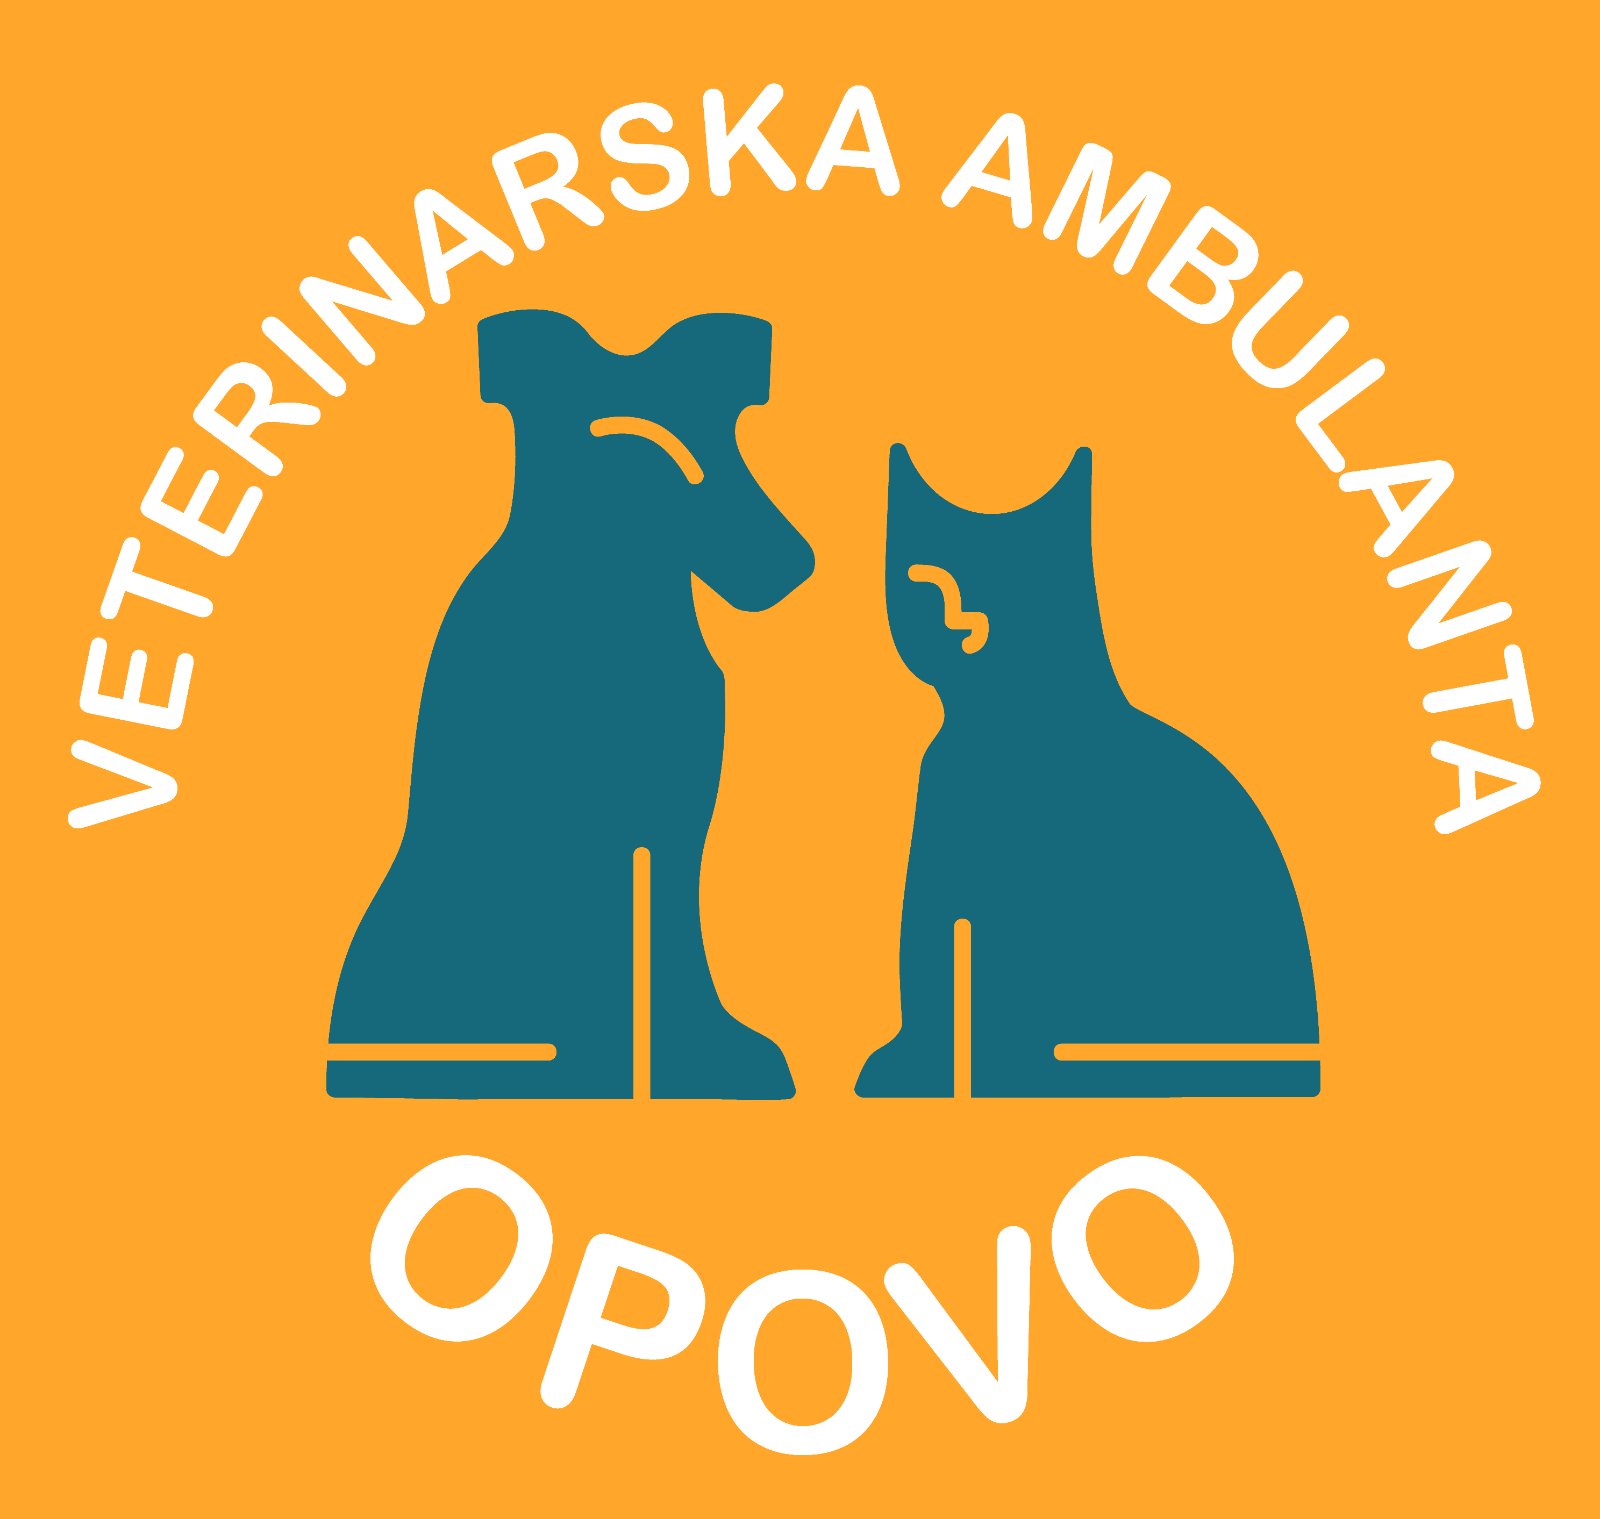 Vet stanica Pančevo – Veterinarska ambulanta Opovo: Trihineloskopija – preventivni pregled svinjskog mesa